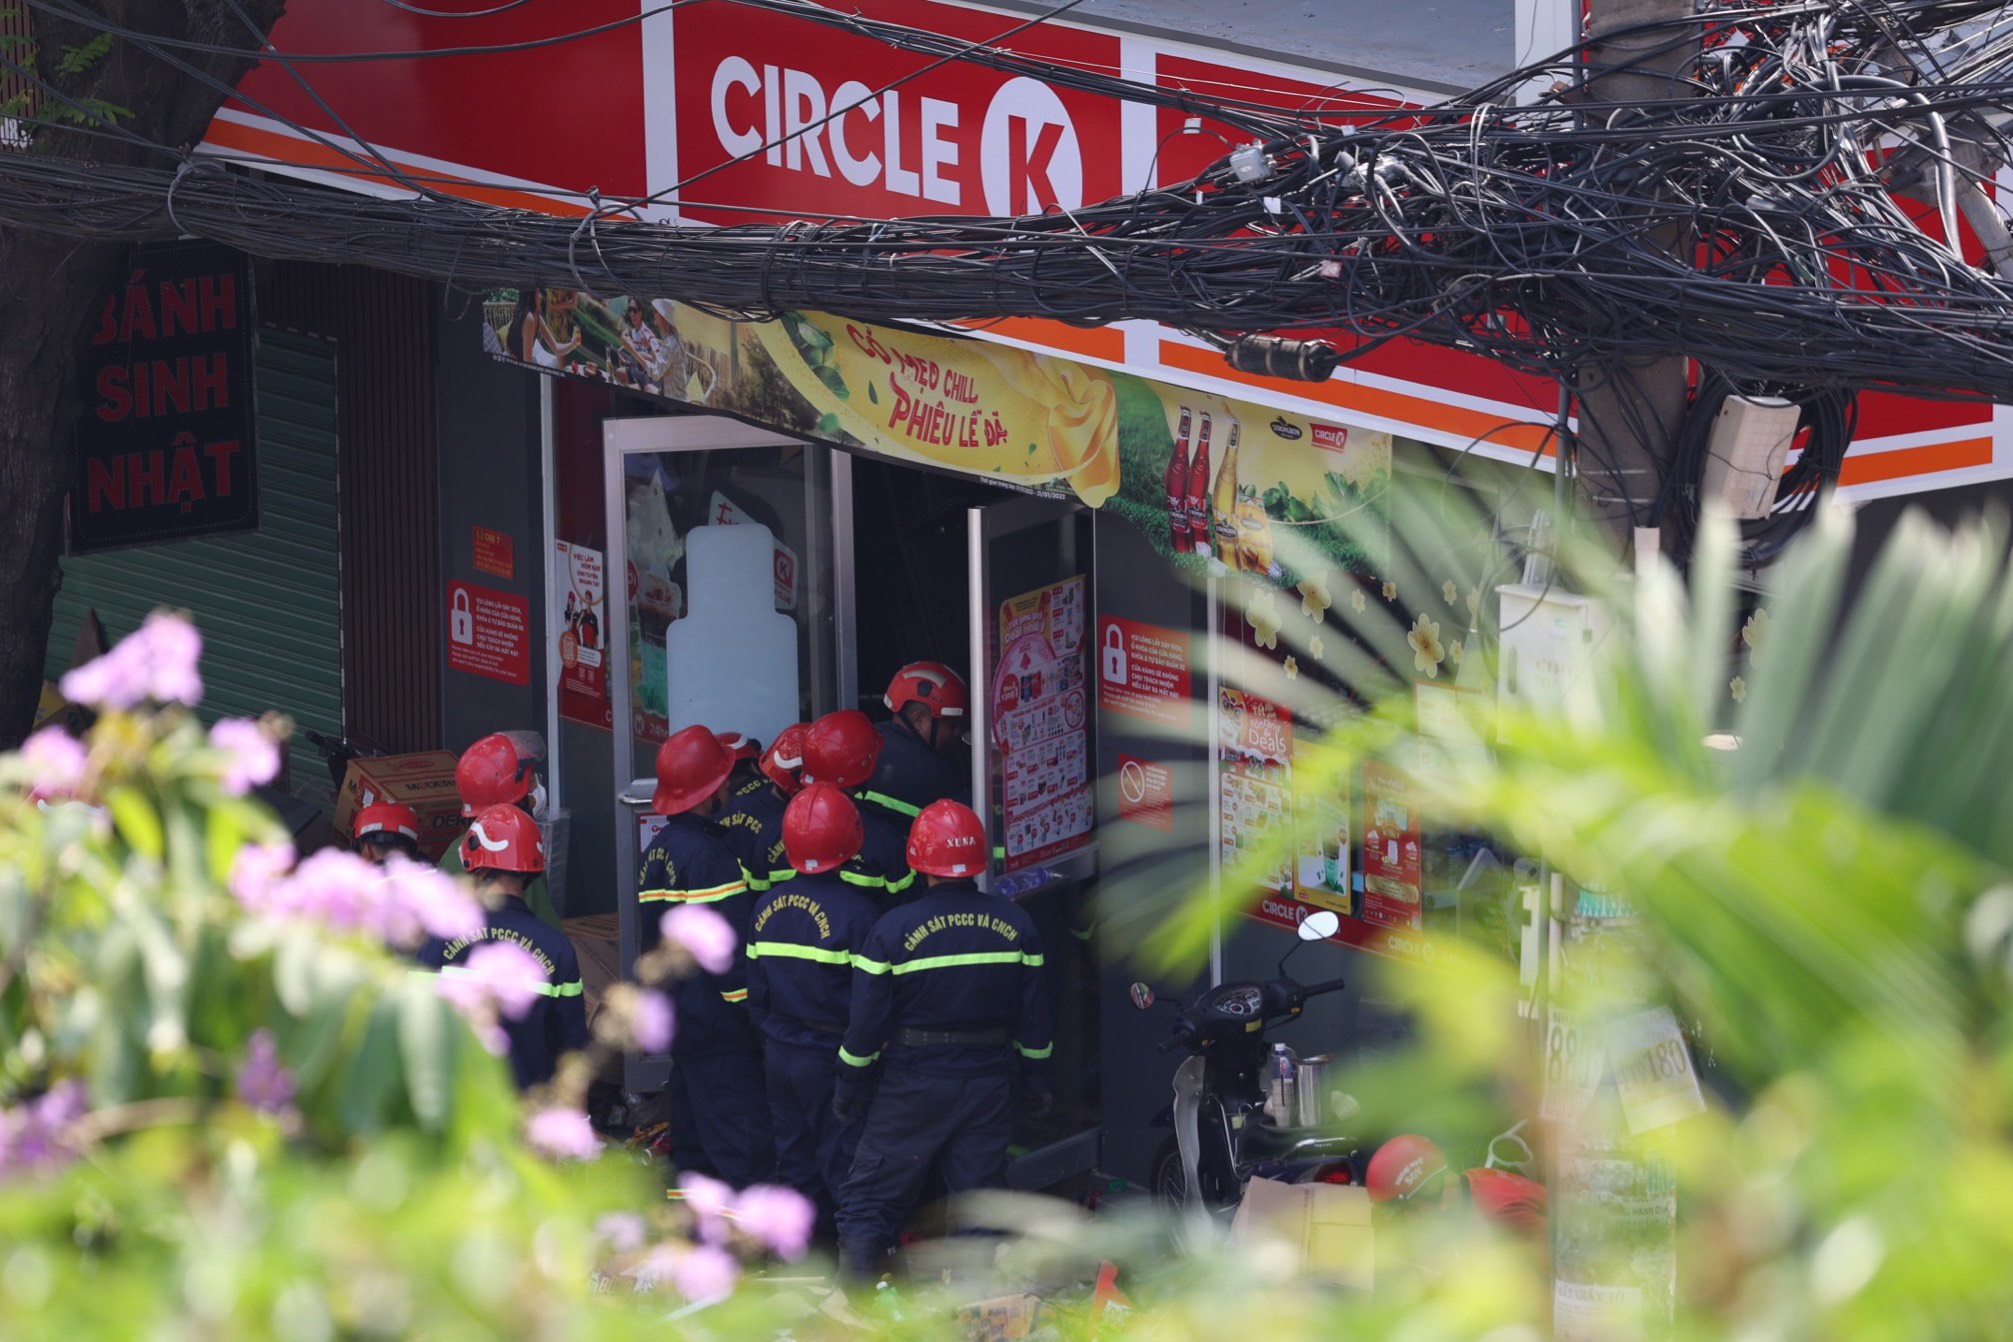 Toàn cảnh hiện trường cửa hàng Circle K bị sập khiến một nữ sinh tử vong - 4